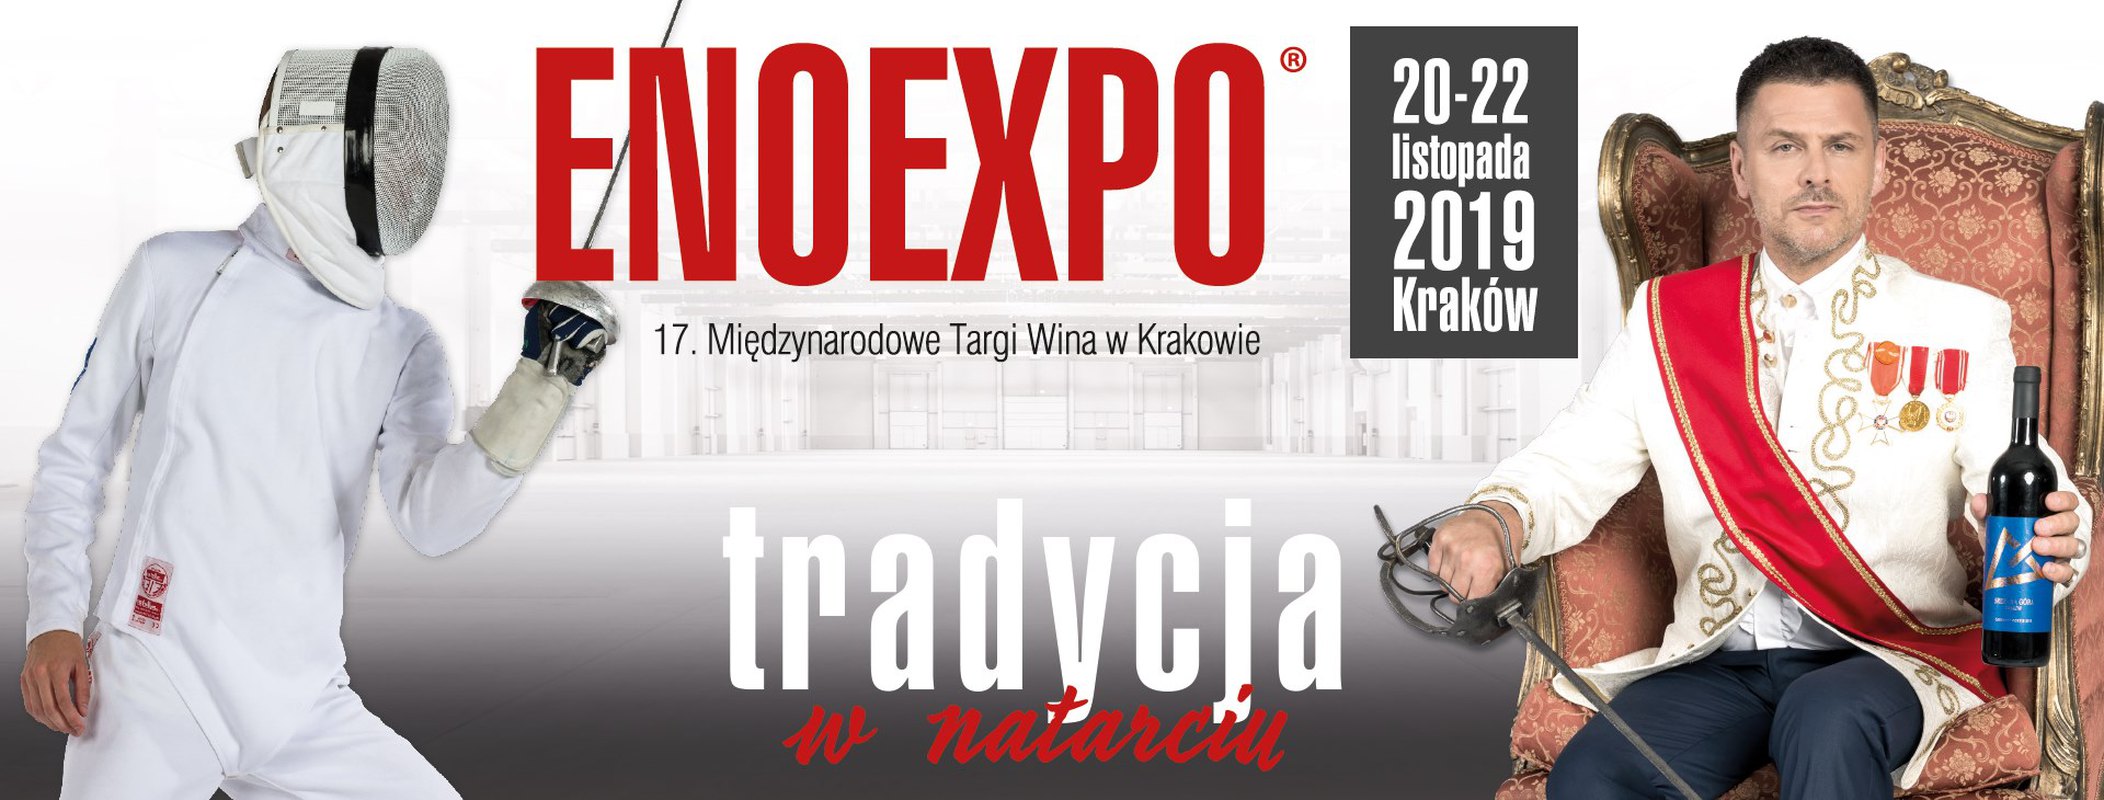 Enoexpo® 2019 Official - Międzynarodowe Targi Wina w Krakowie